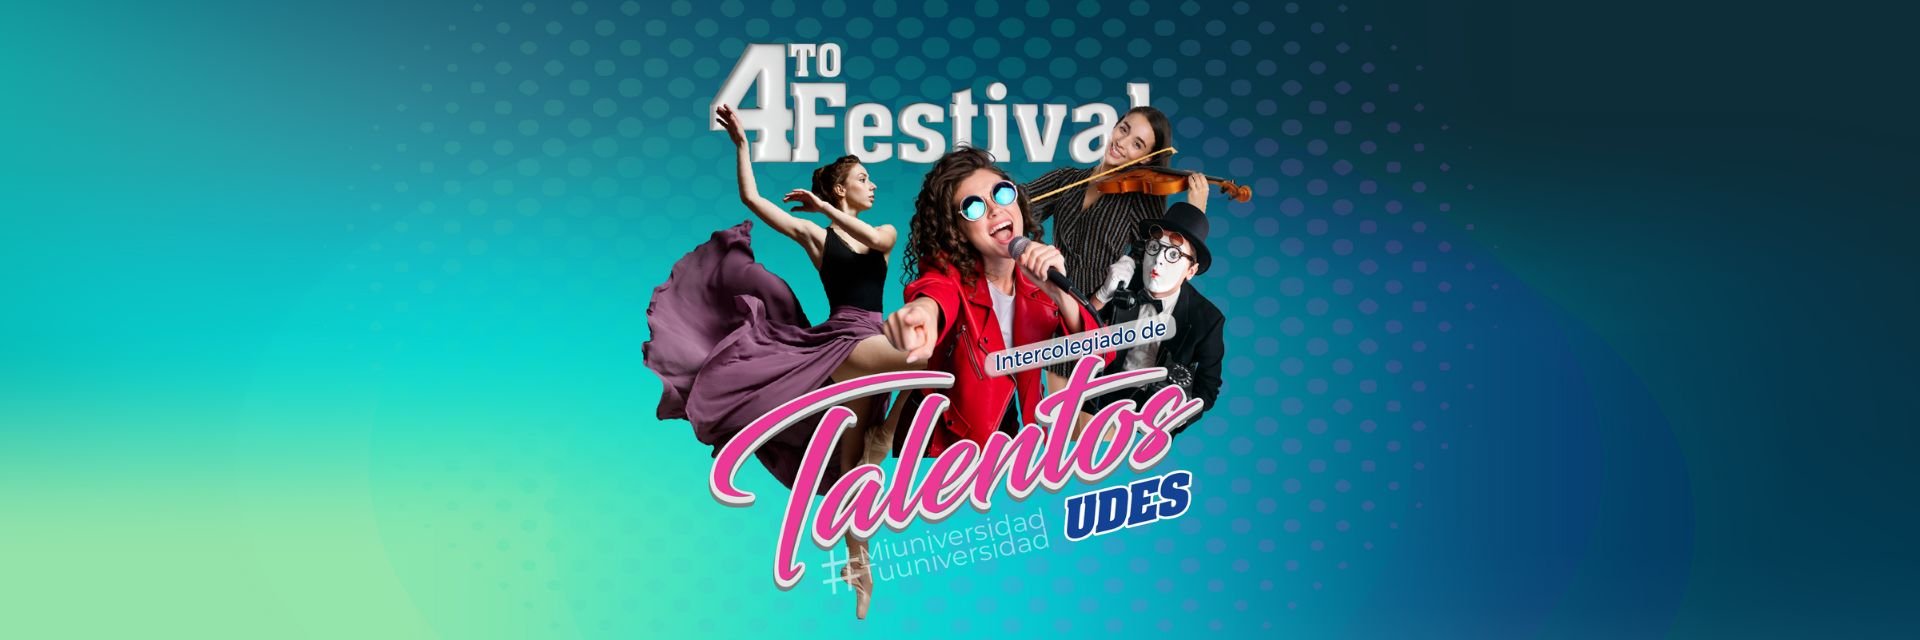 Ampliada fecha de inscripción para tercer Festival Intercolegiado de Talentos multicampus